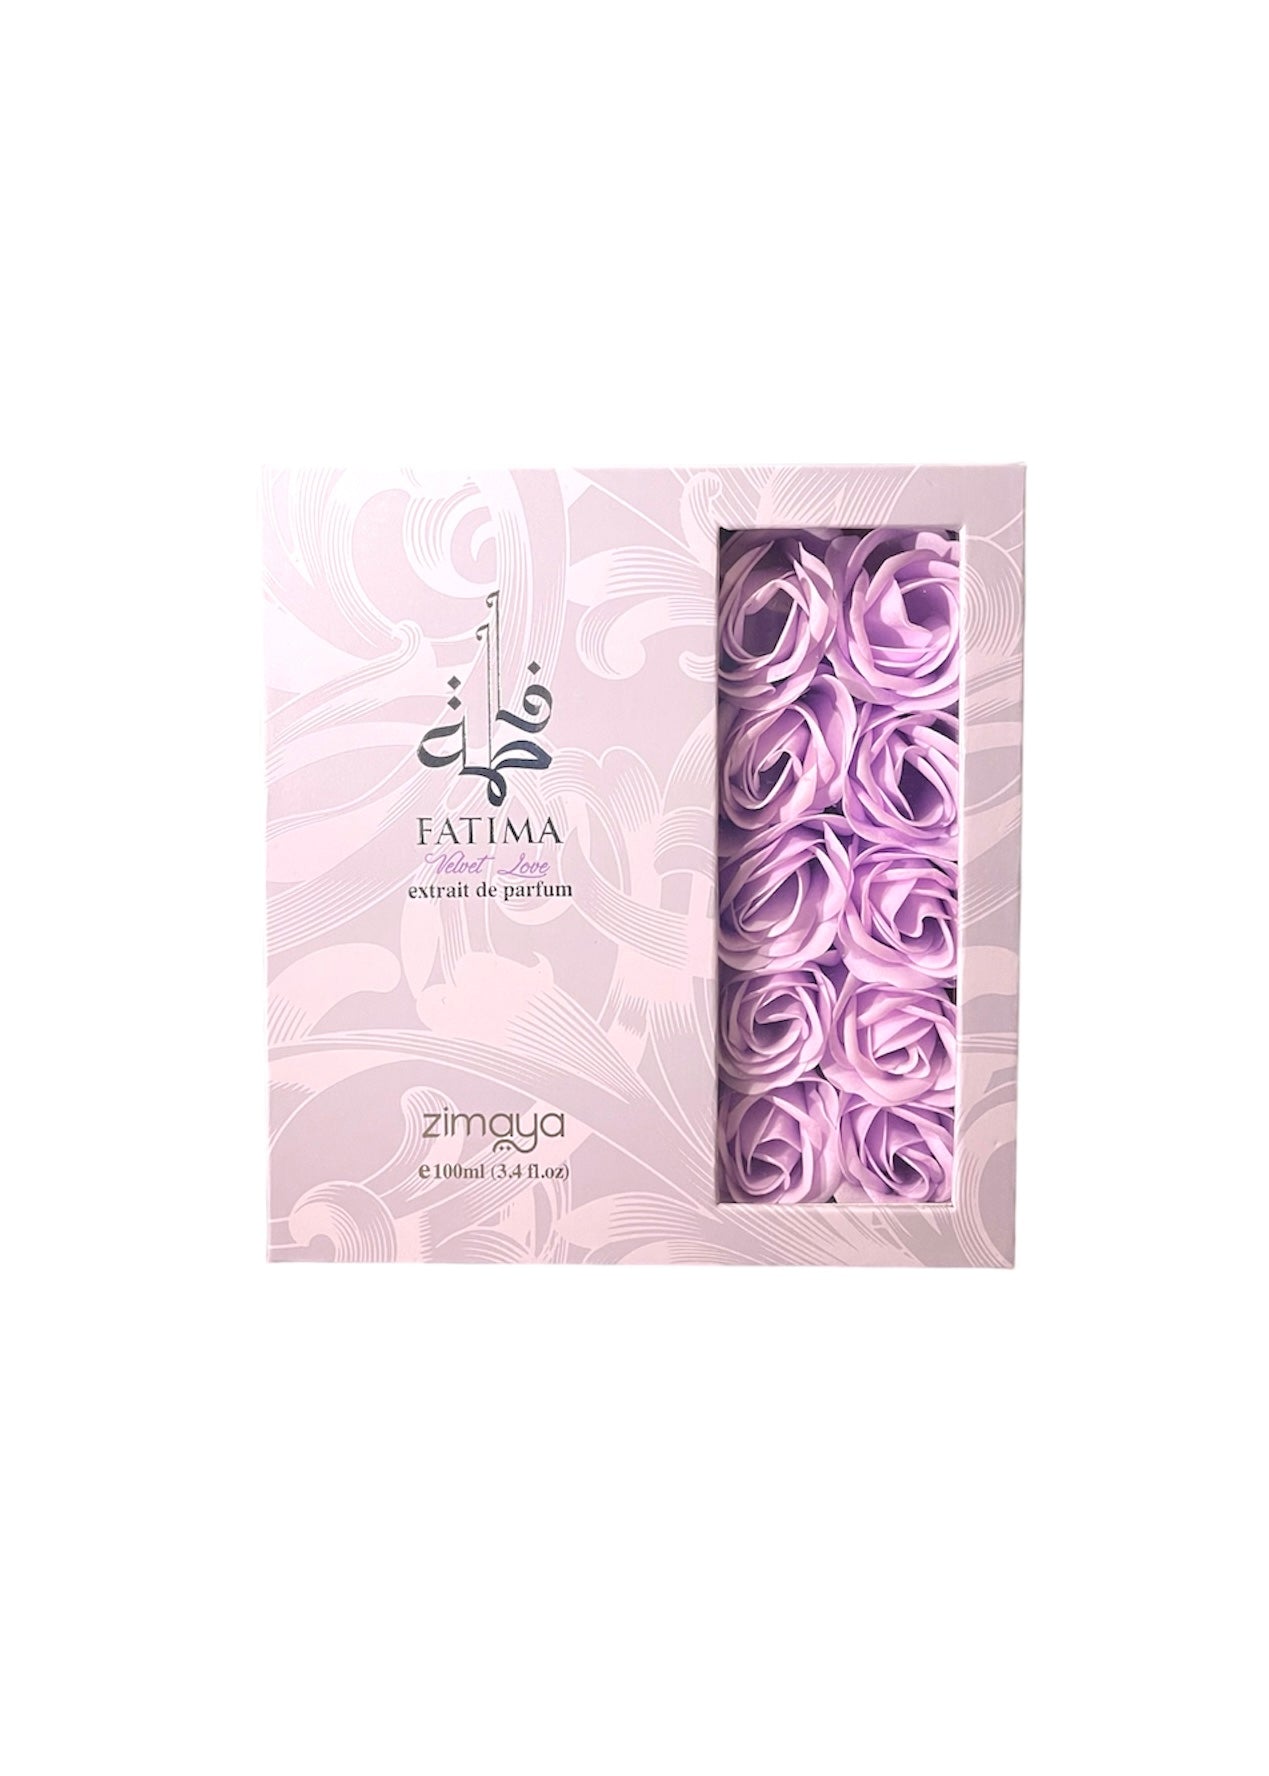 Afnan Zimaya Fatima Velvet Love Extrait de Parfum For Women